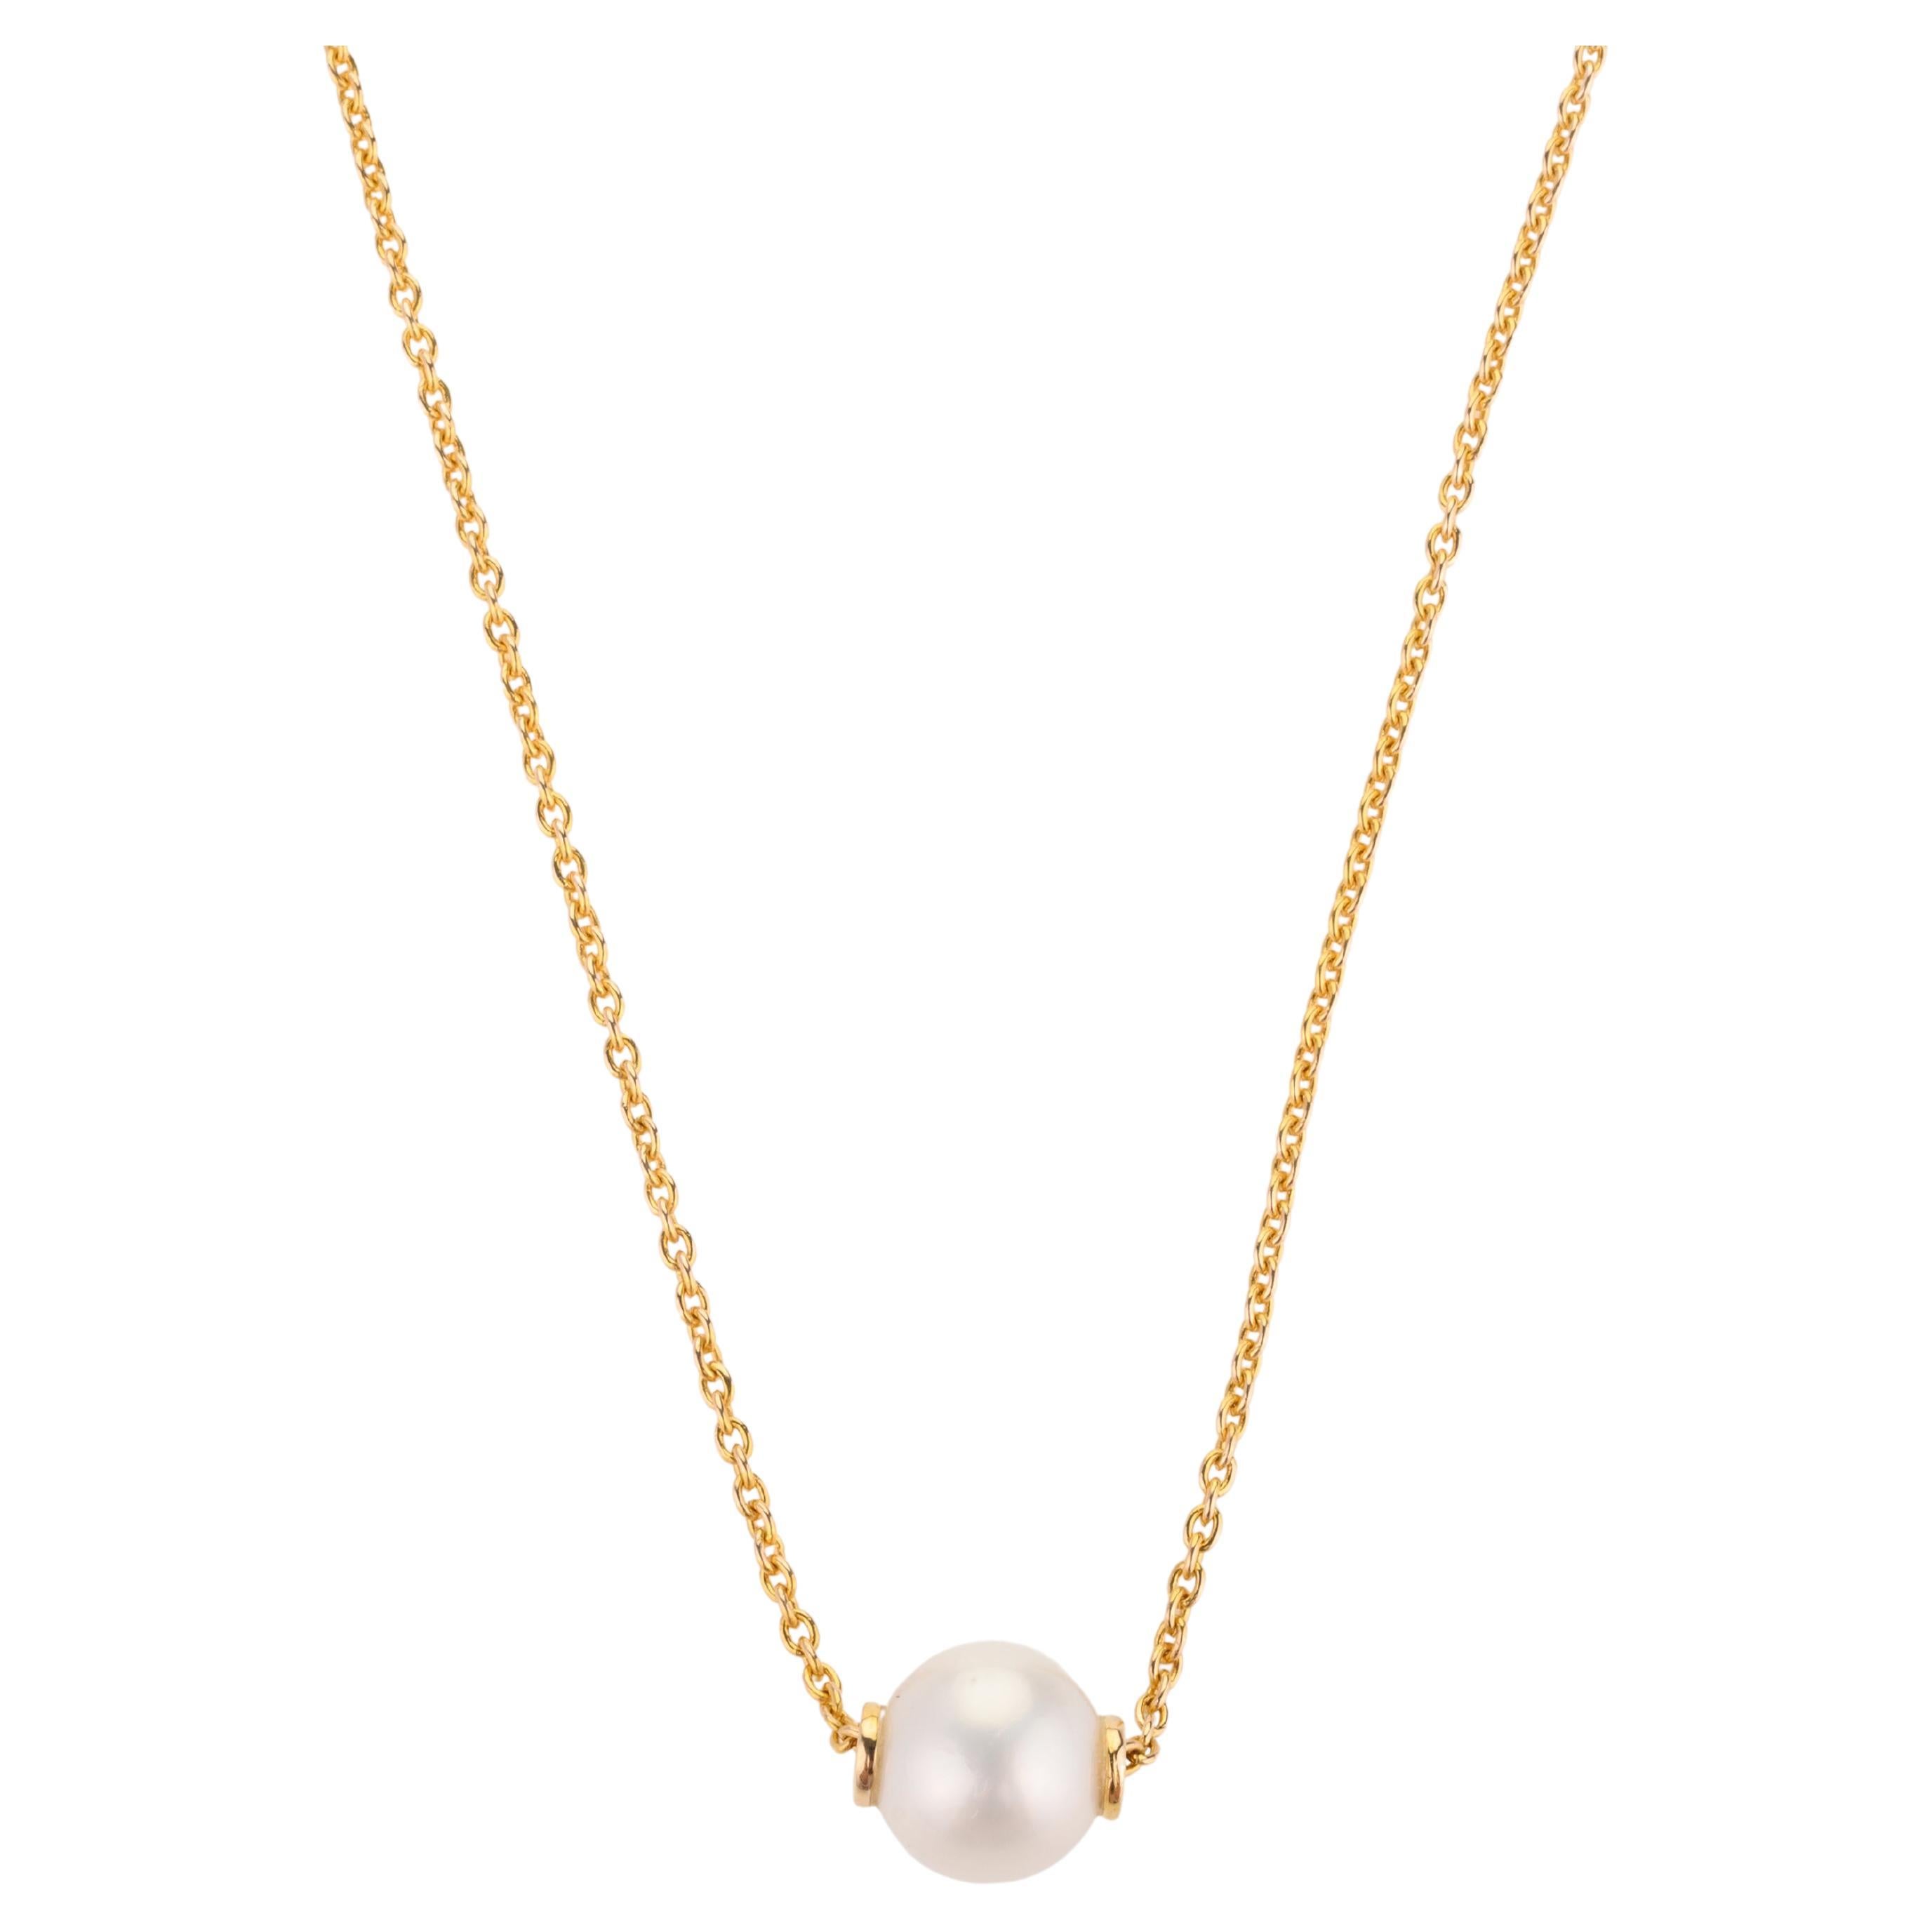 Chaîne collier moderne en or jaune massif 18 carats avec une perle unique de 5 carats